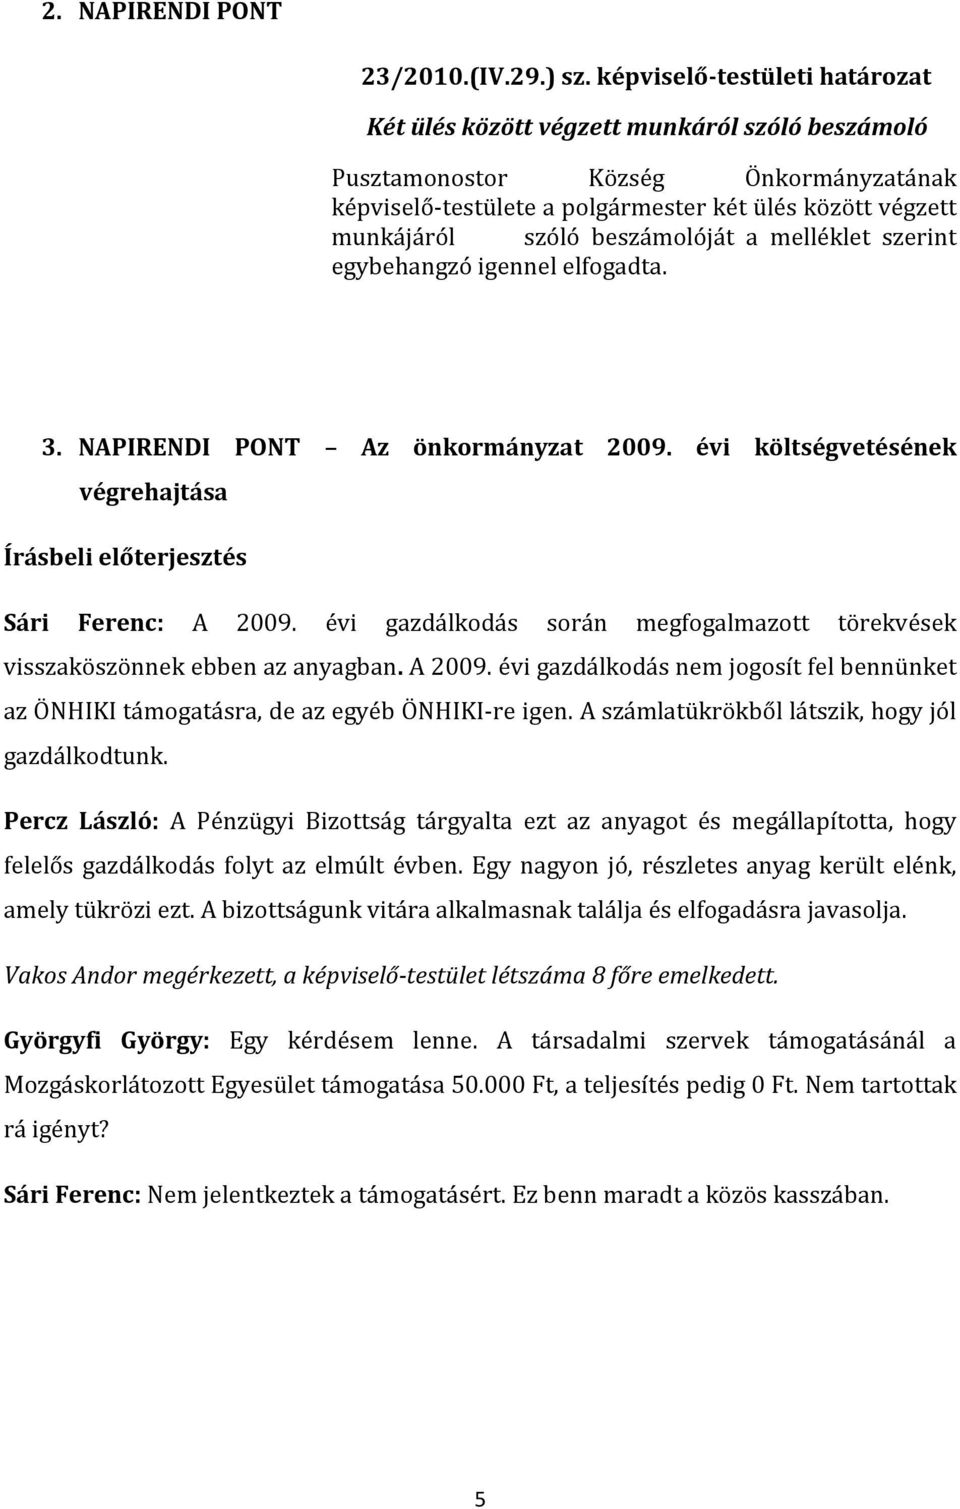 beszámolóját a melléklet szerint egybehangzó igennel elfogadta. 3. NAPIRENDI PONT Az önkormányzat 2009. évi költségvetésének végrehajtása Írásbeli előterjesztés Sári Ferenc: A 2009.